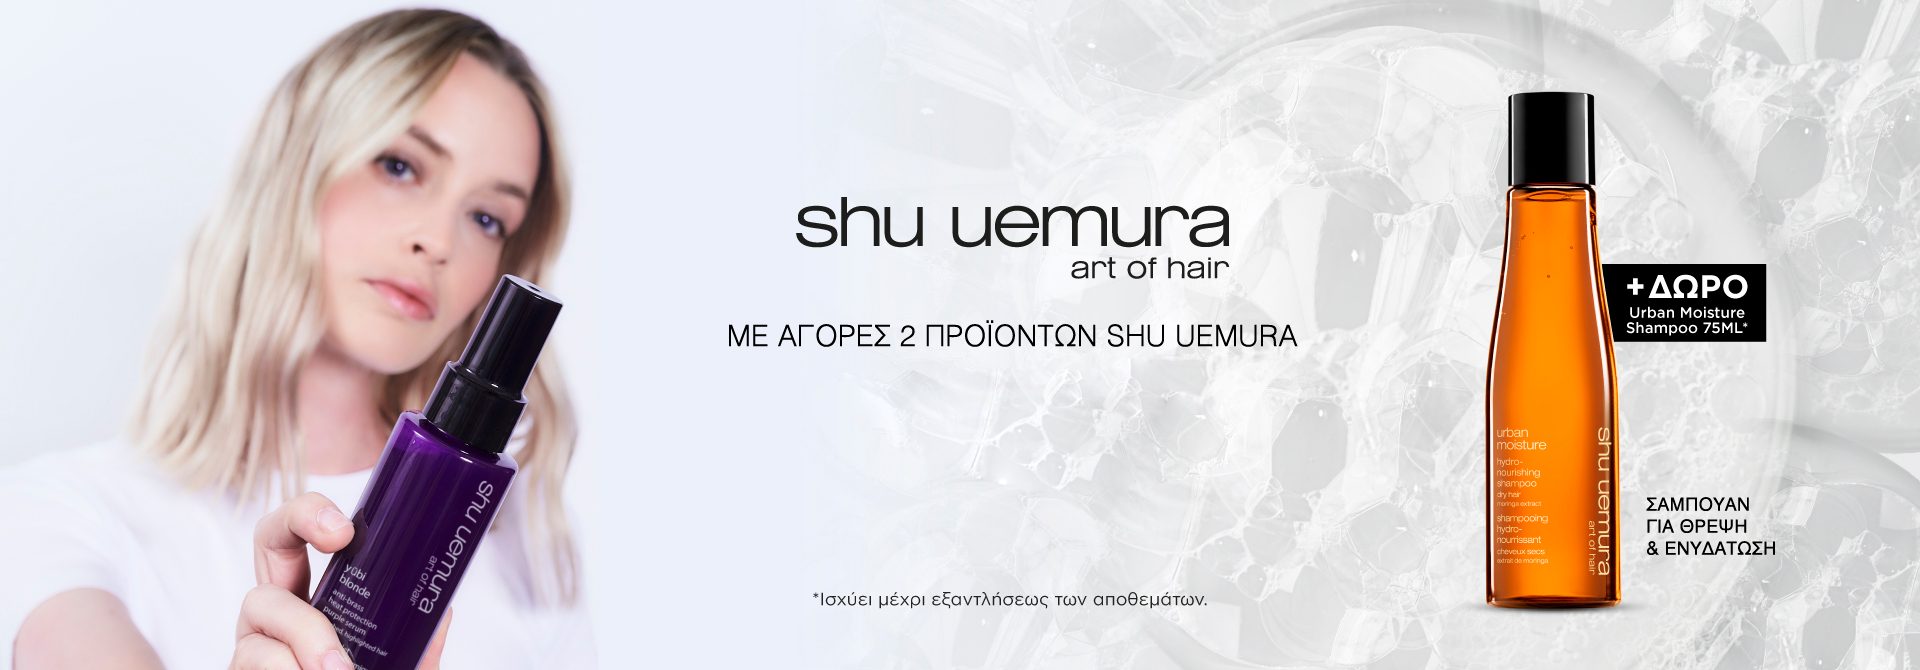 Shu Uemura Offer